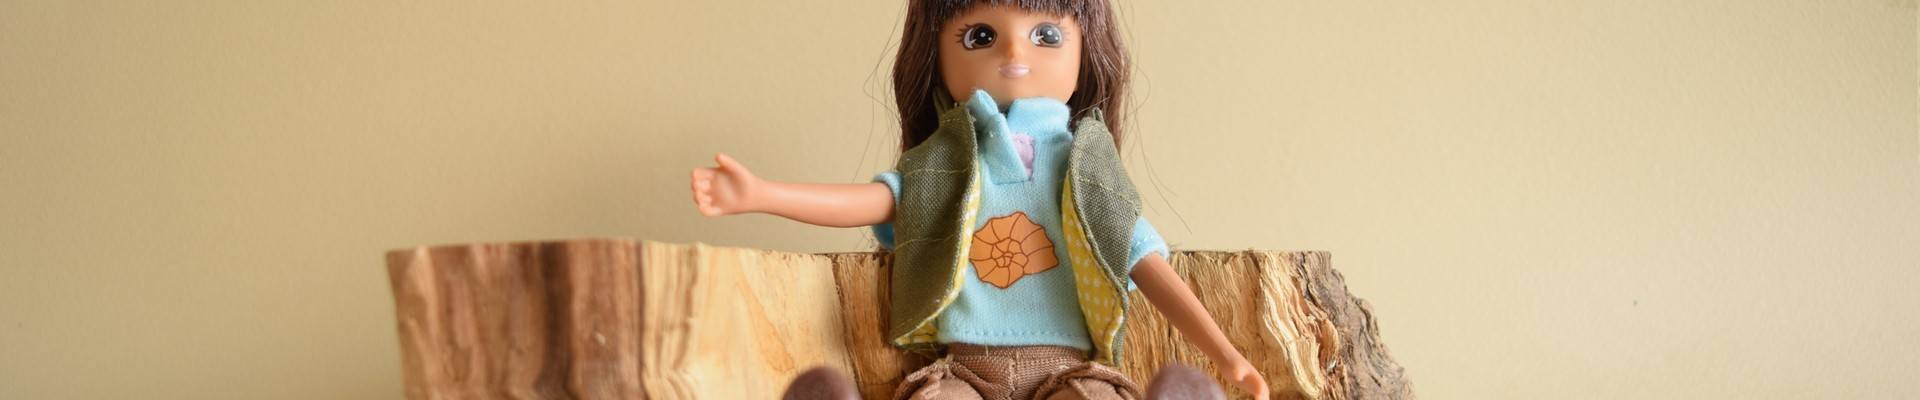 Comprar muñecas y muñecos para niños | Veobio